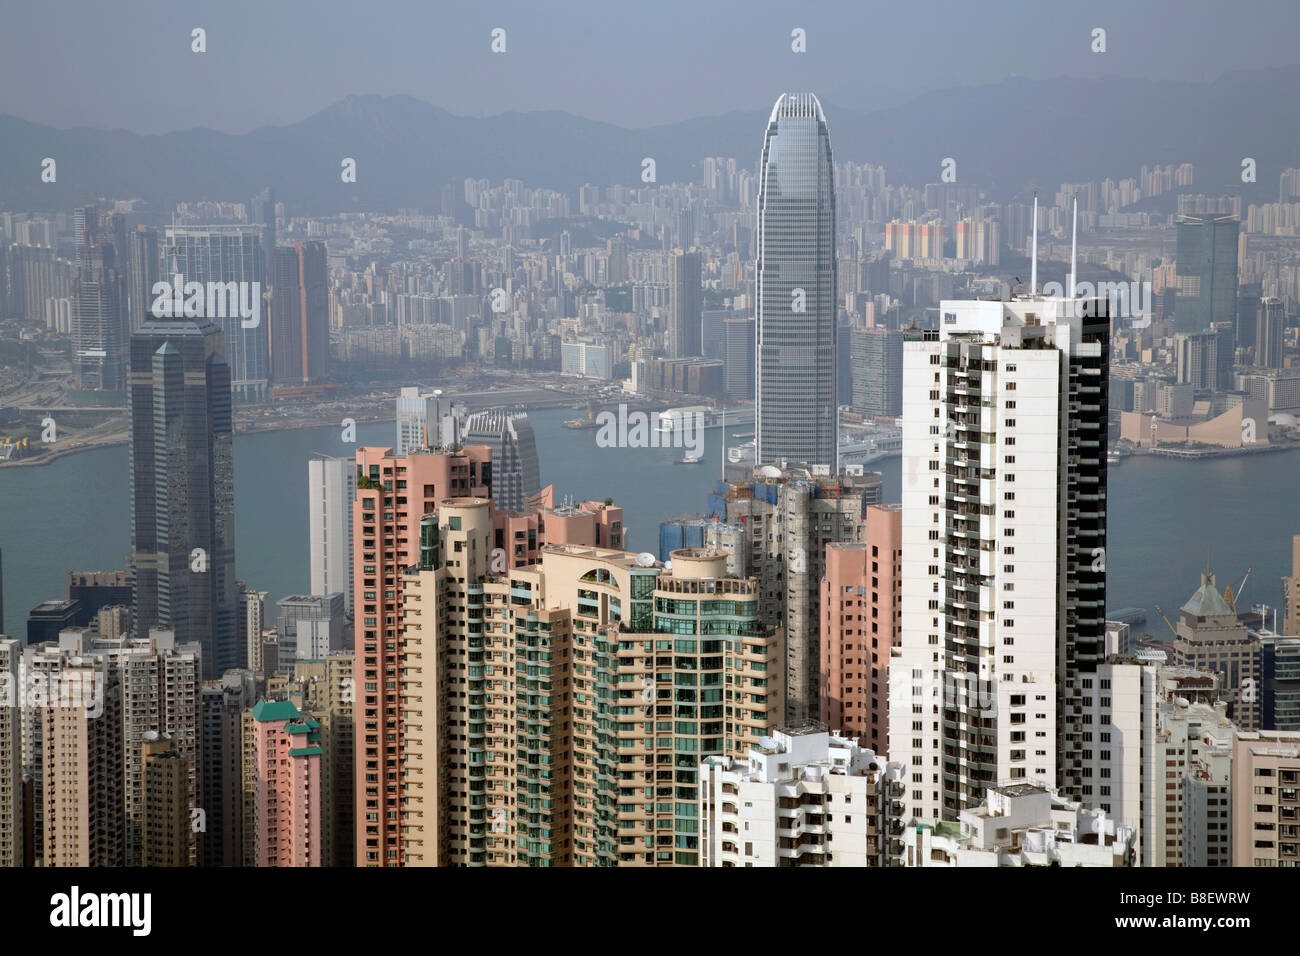 Cityscape of Hong Kong, China Stock Photo